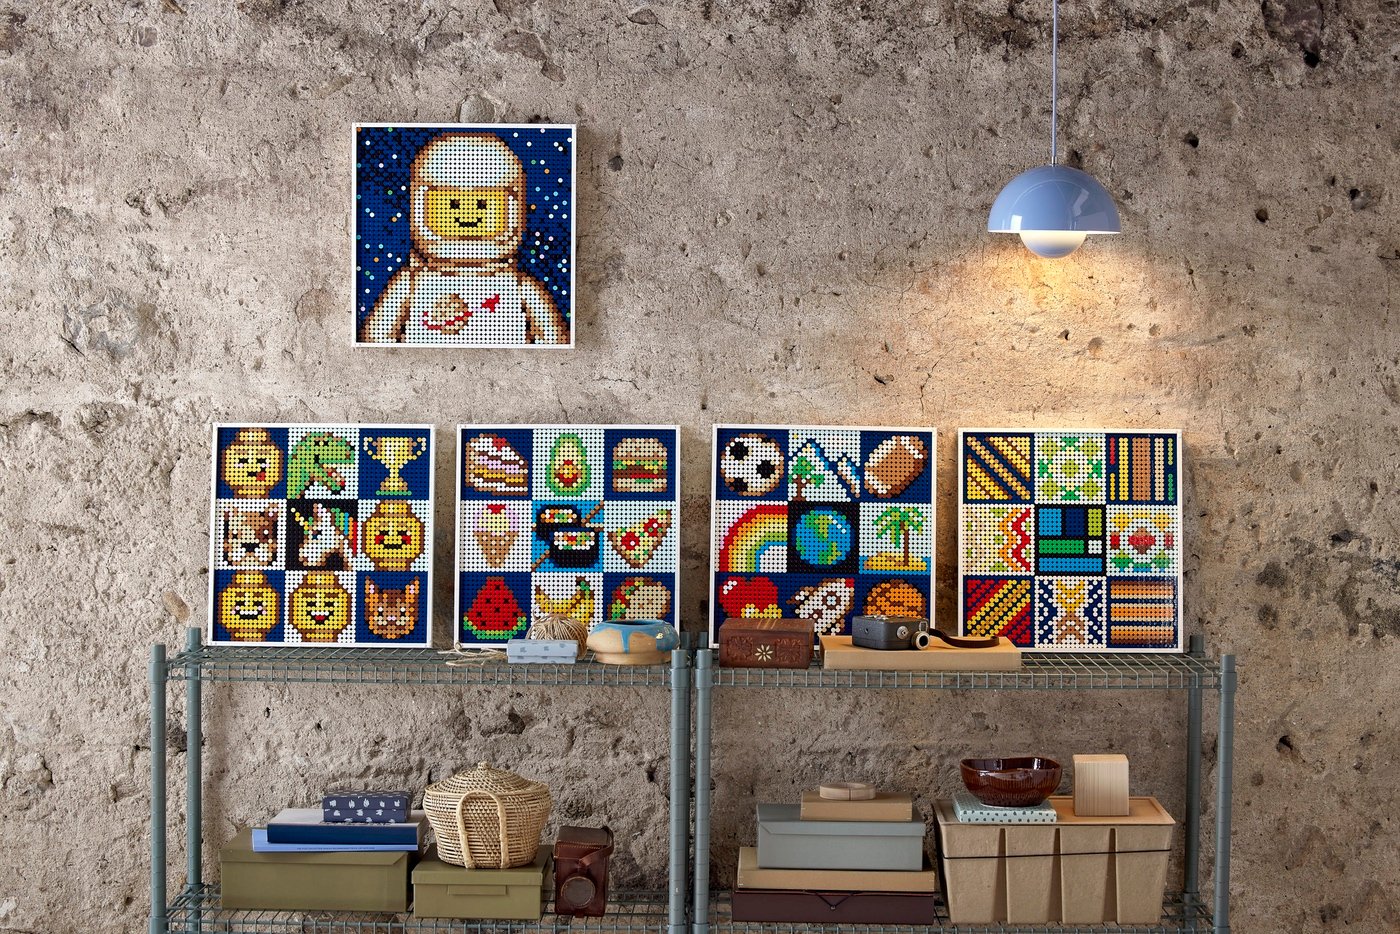 Le Set LEGO Friends Central Perk : un collector qui rend hommage à la série